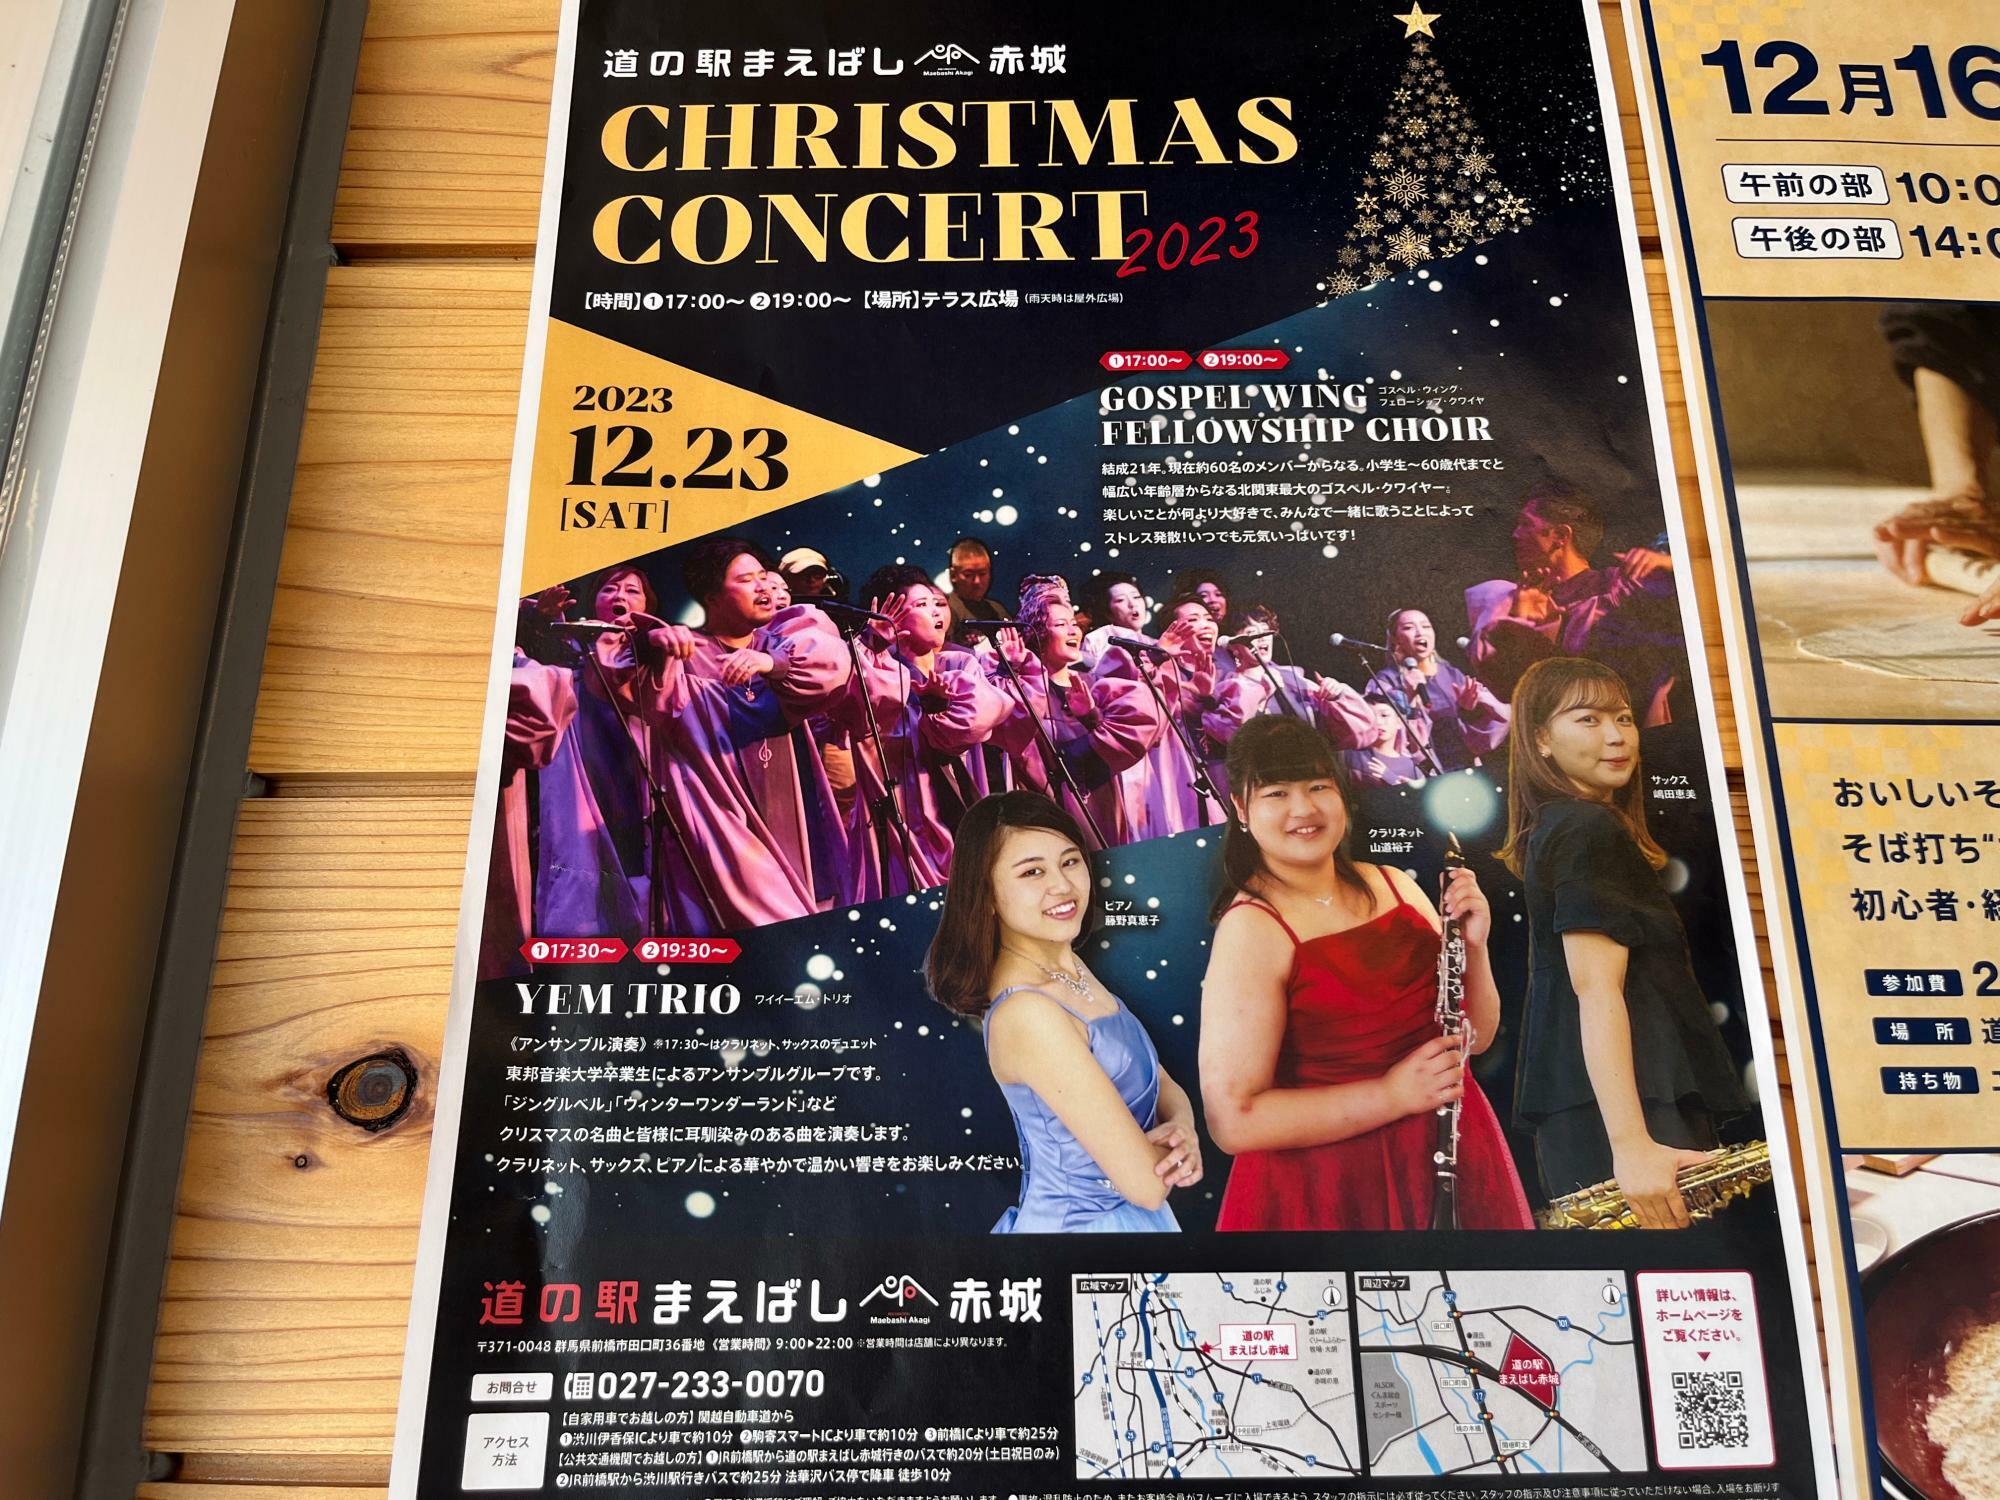 「道の駅まえばし赤城クリスマスコンサート2023」開催告知のポスター